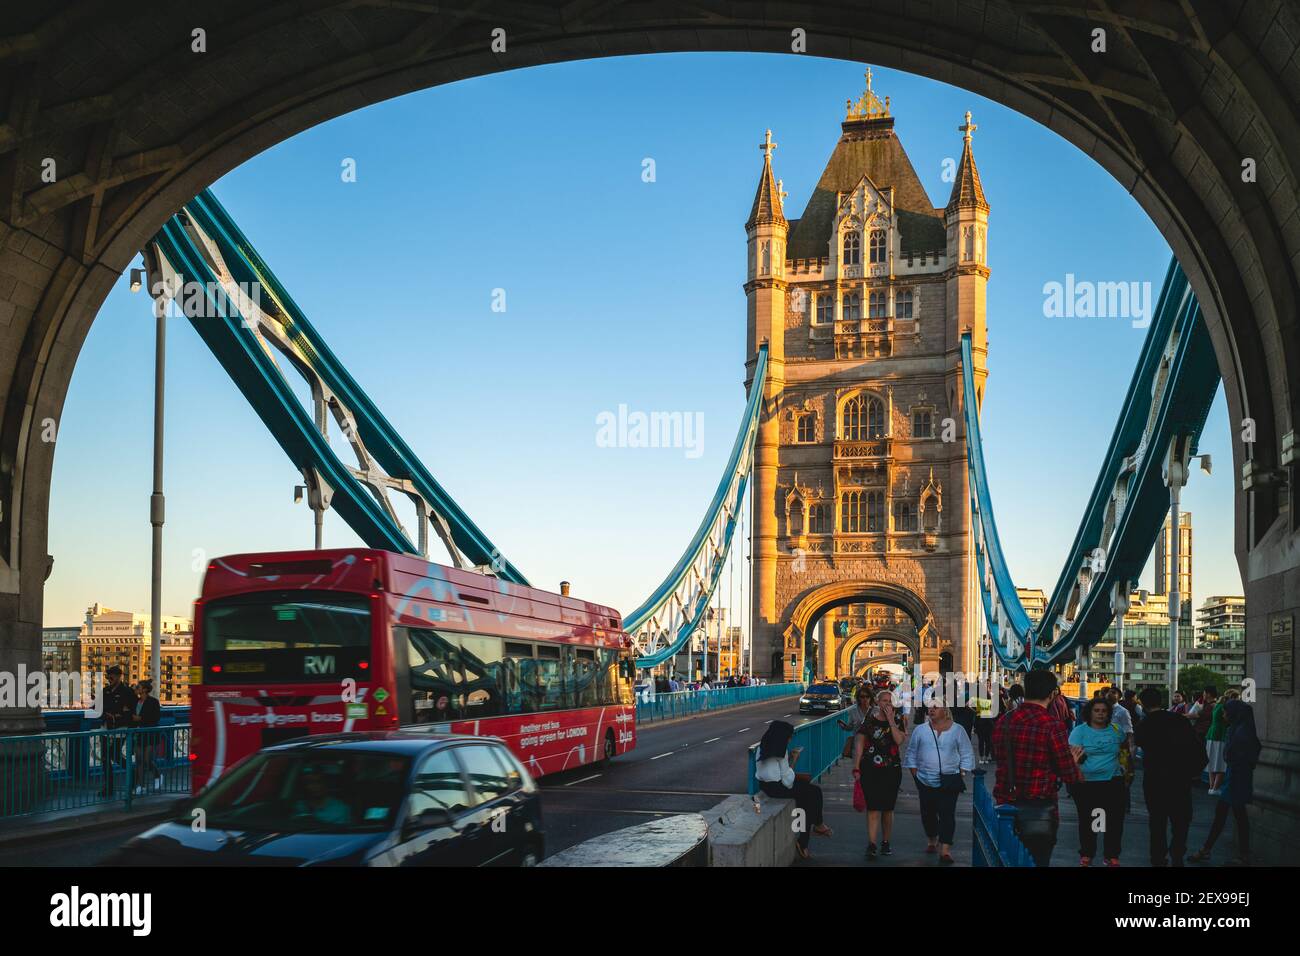 29. Juni 2018: Szenerie auf der Tower Bridge, einer kombinierten Bascule- und Hängebrücke über die Themse in London, England, Großbritannien. Es wurde zwischen gebaut Stockfoto